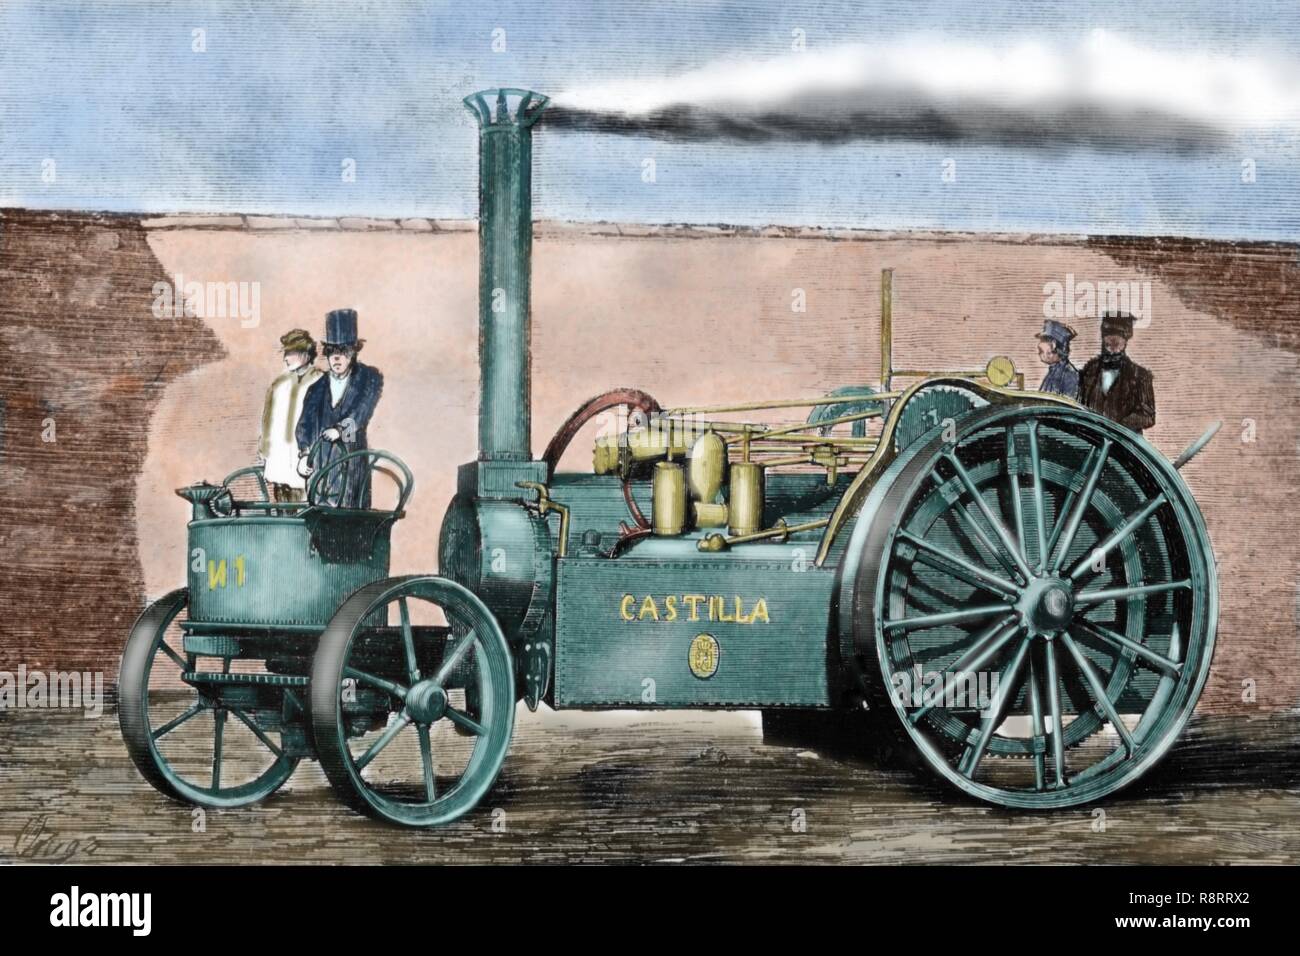 Spanisch Traction Engine' Castilla" von Pedro de Ribera. Es transportiert 4 Personen von Valladolid, Madrid, die über 200 Kilometer in 20 Tagen im Jahre 1860. Stockfoto